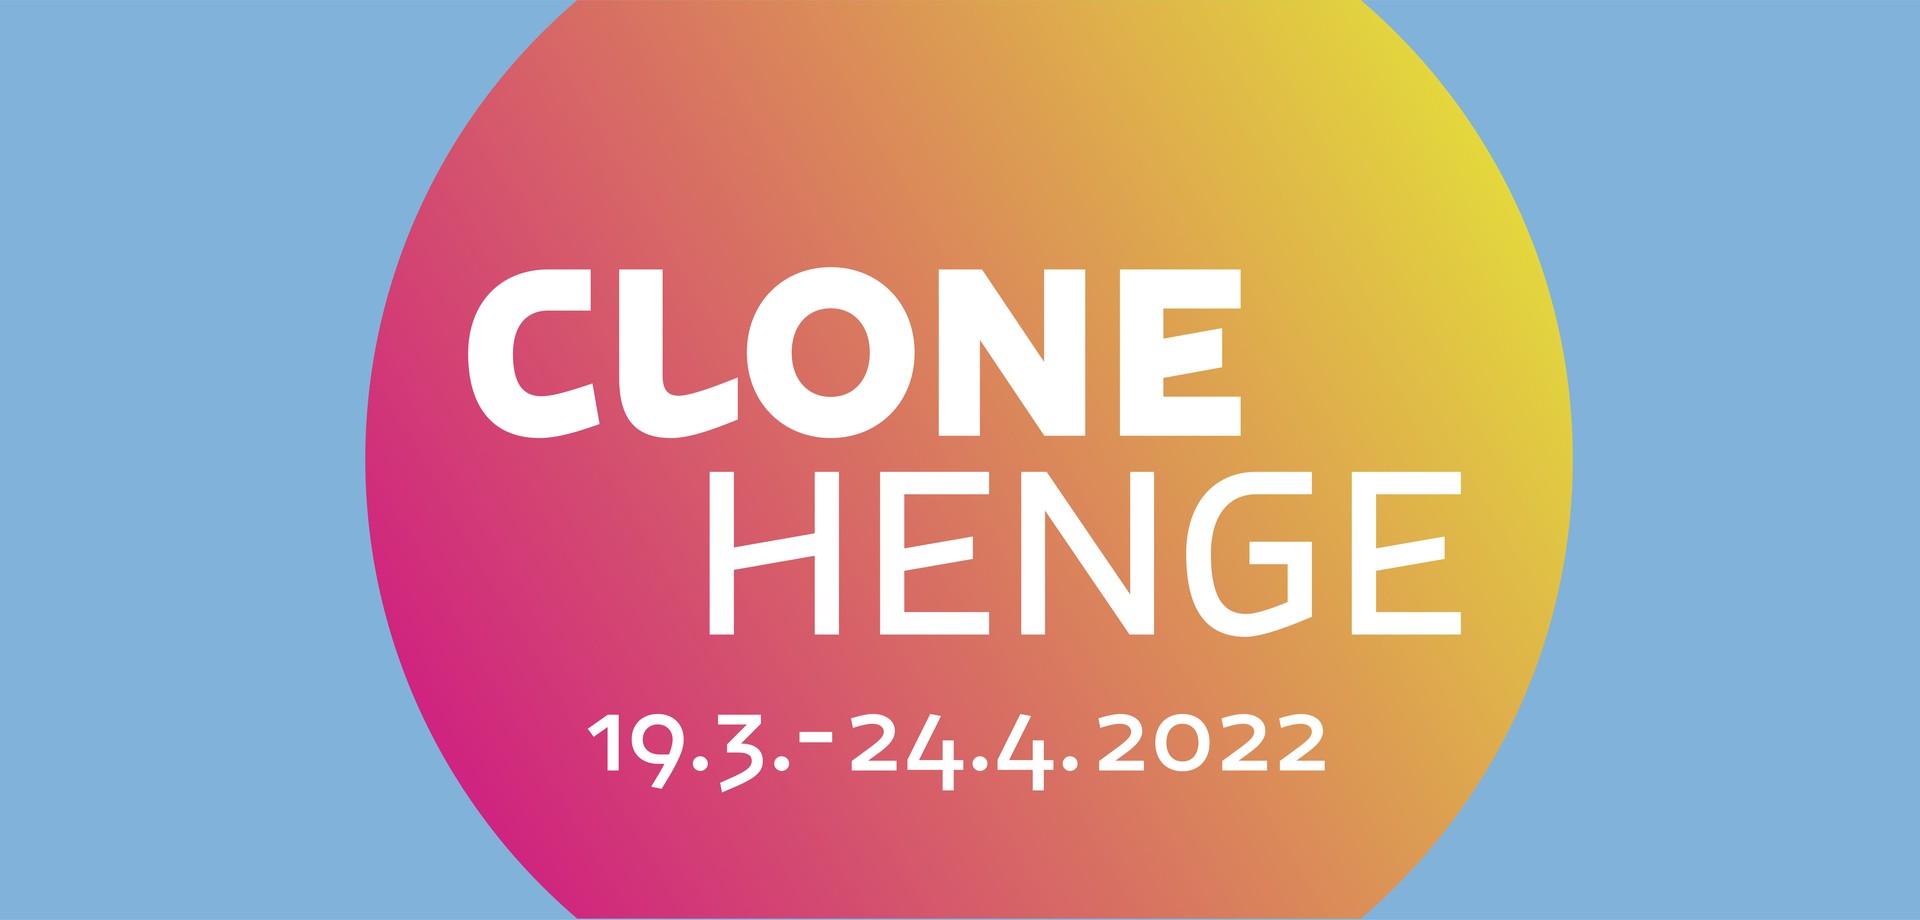 Grafik mit Sonne für die Clonehenge-Ausstellung